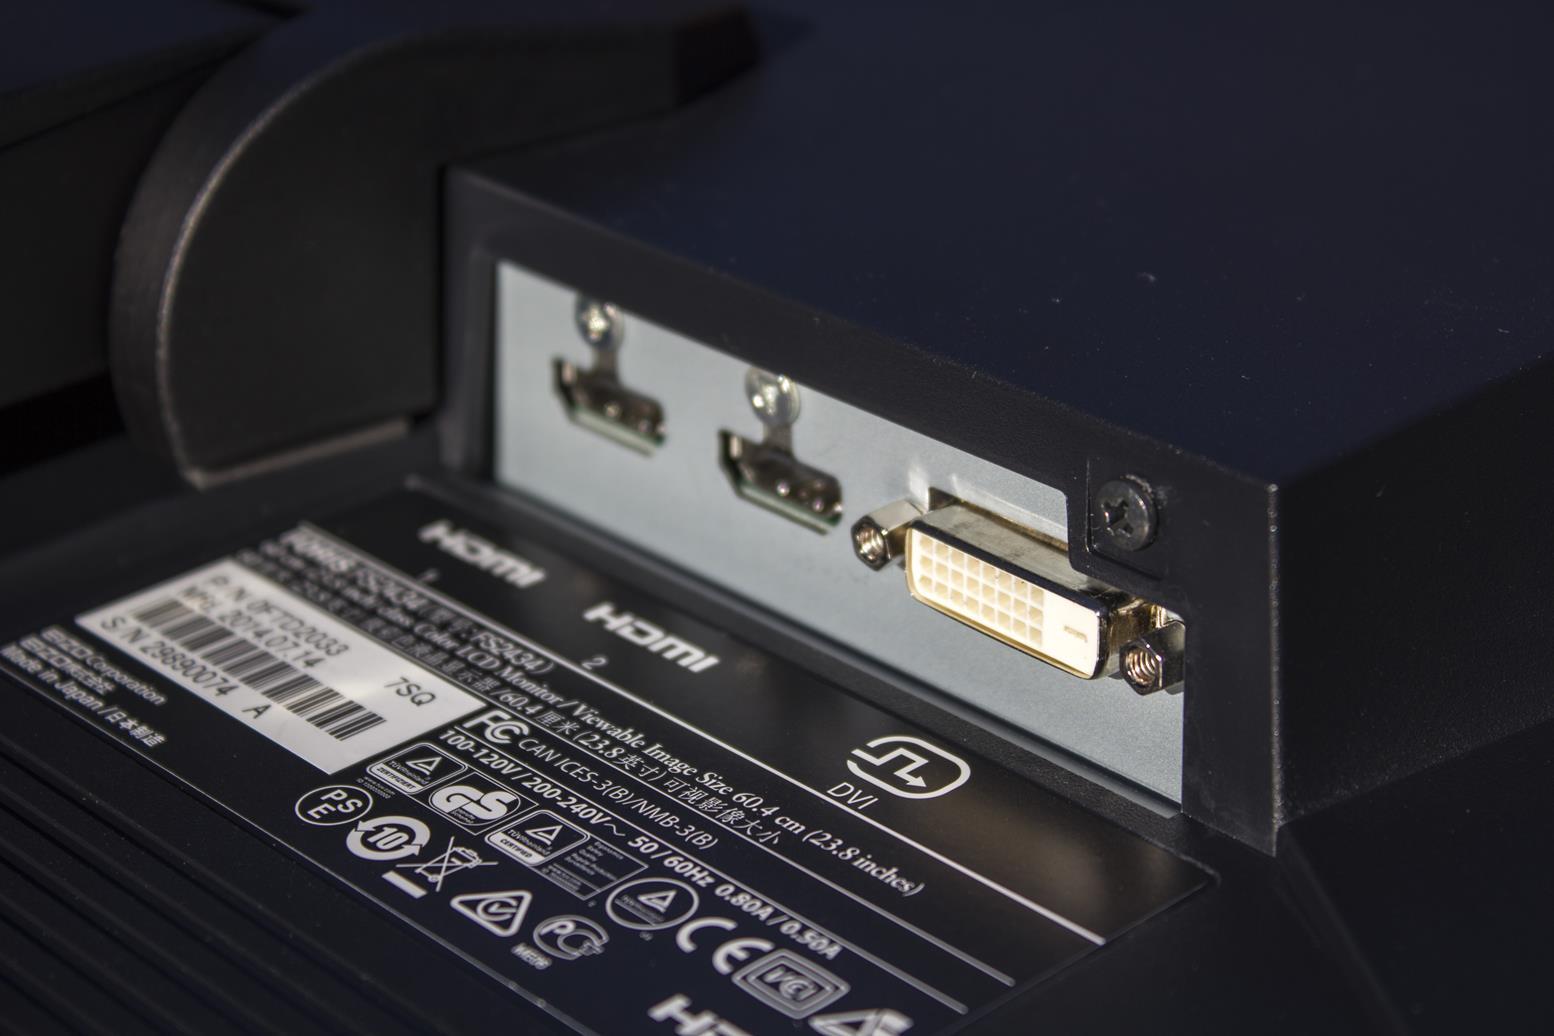 Ekran je mogoče povezati s tremi različnimi kabli - DVI-D, DisplayPort in HDMI 1.4.